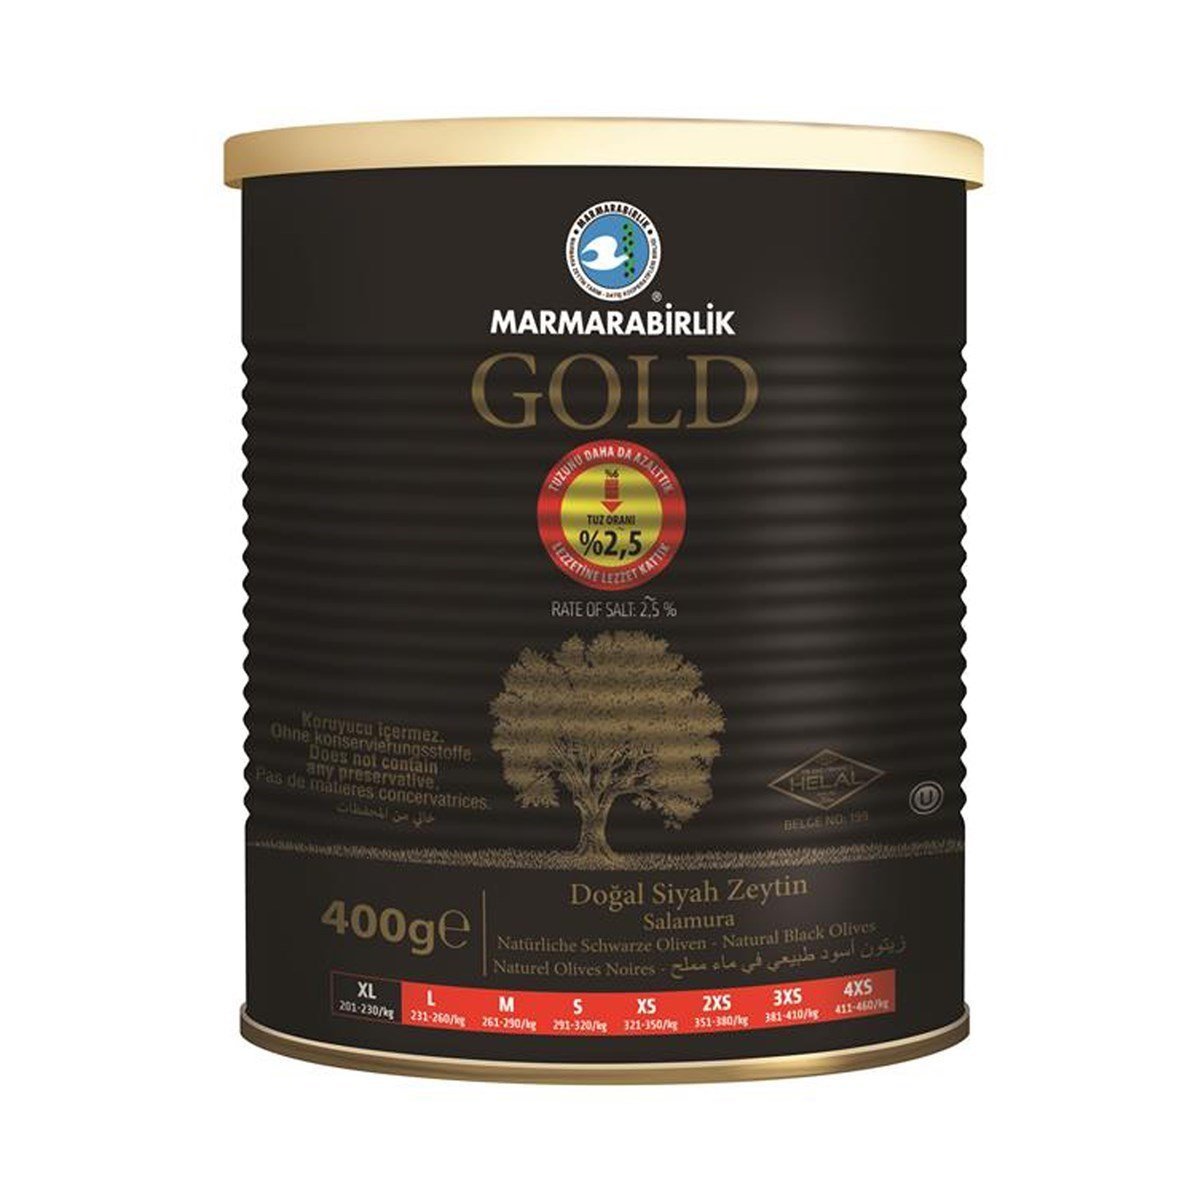 Marmarabirlik Gold %2,5 Tuzlu 400 Gr